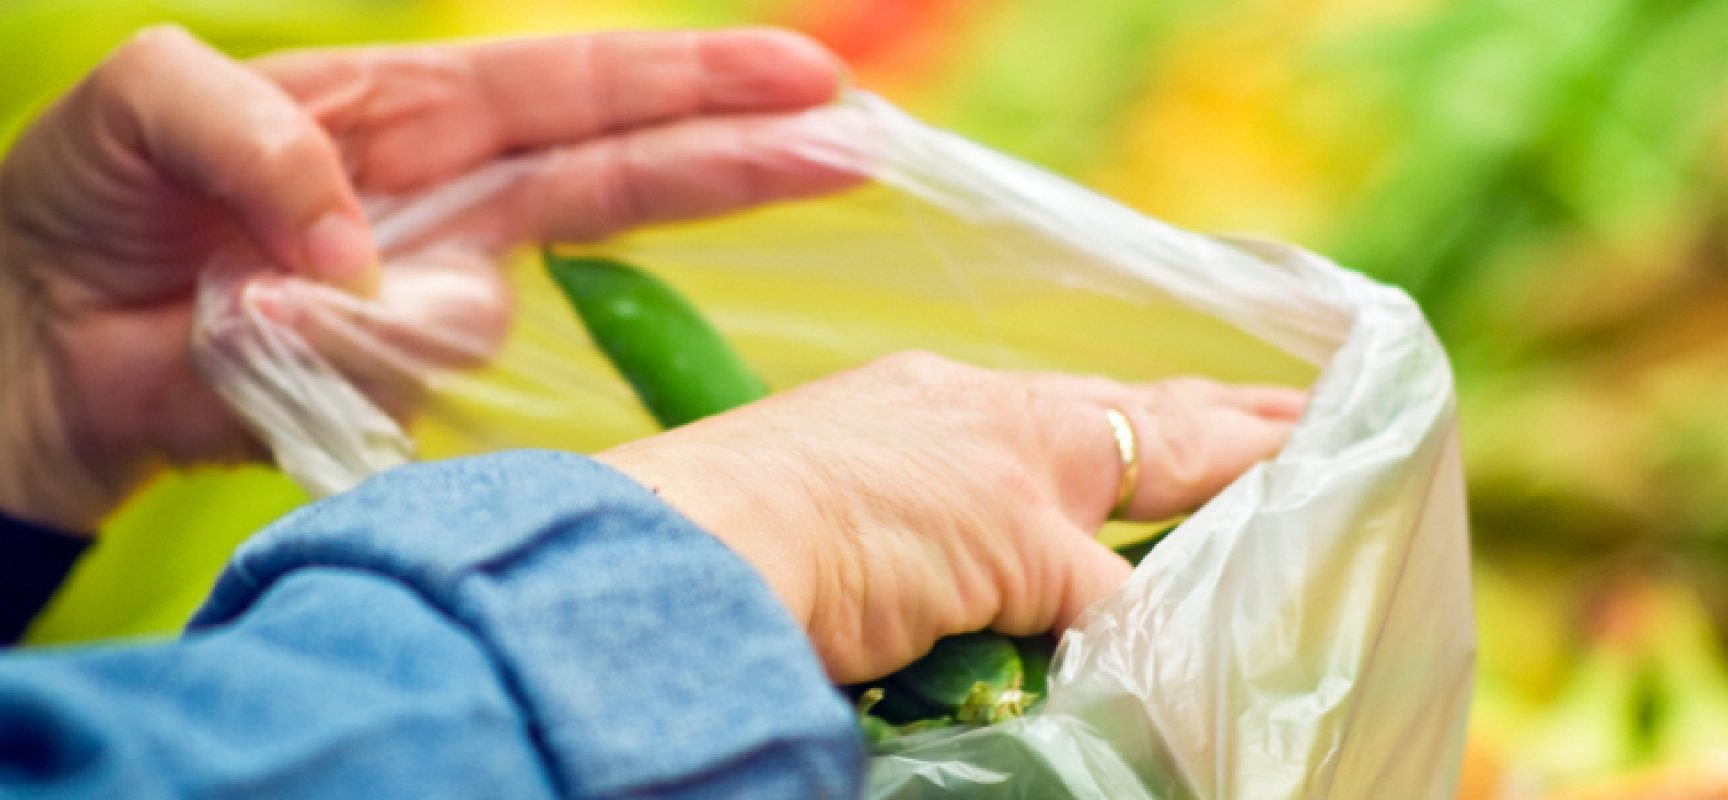 Obbligo sacchetti biodegradabili, Carriera: “Giusta la norma, sbagliate le tempistiche”